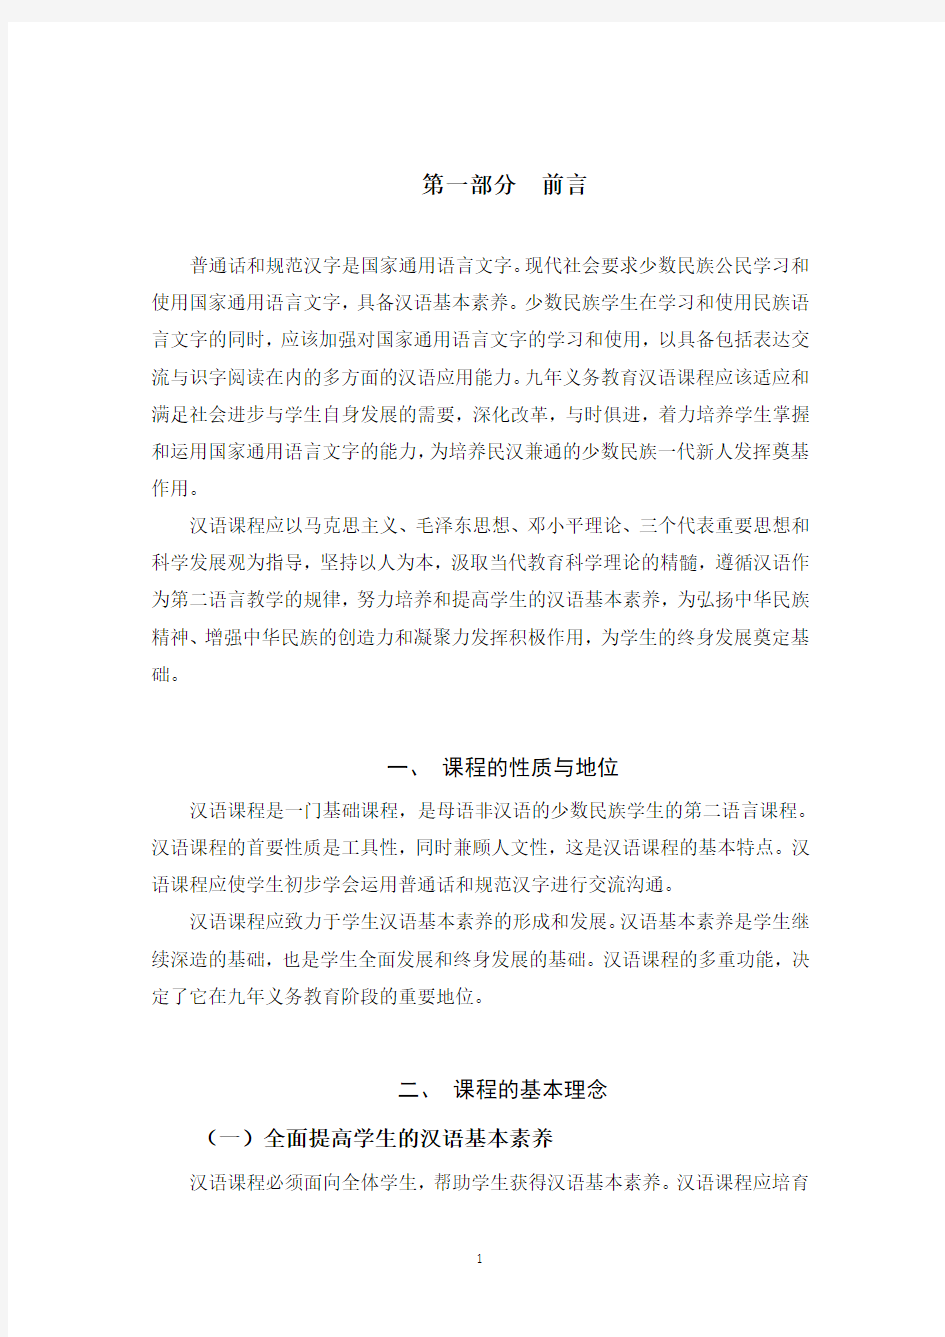 民族中小学汉语课程标准(九年义务教育)(征求意见稿)